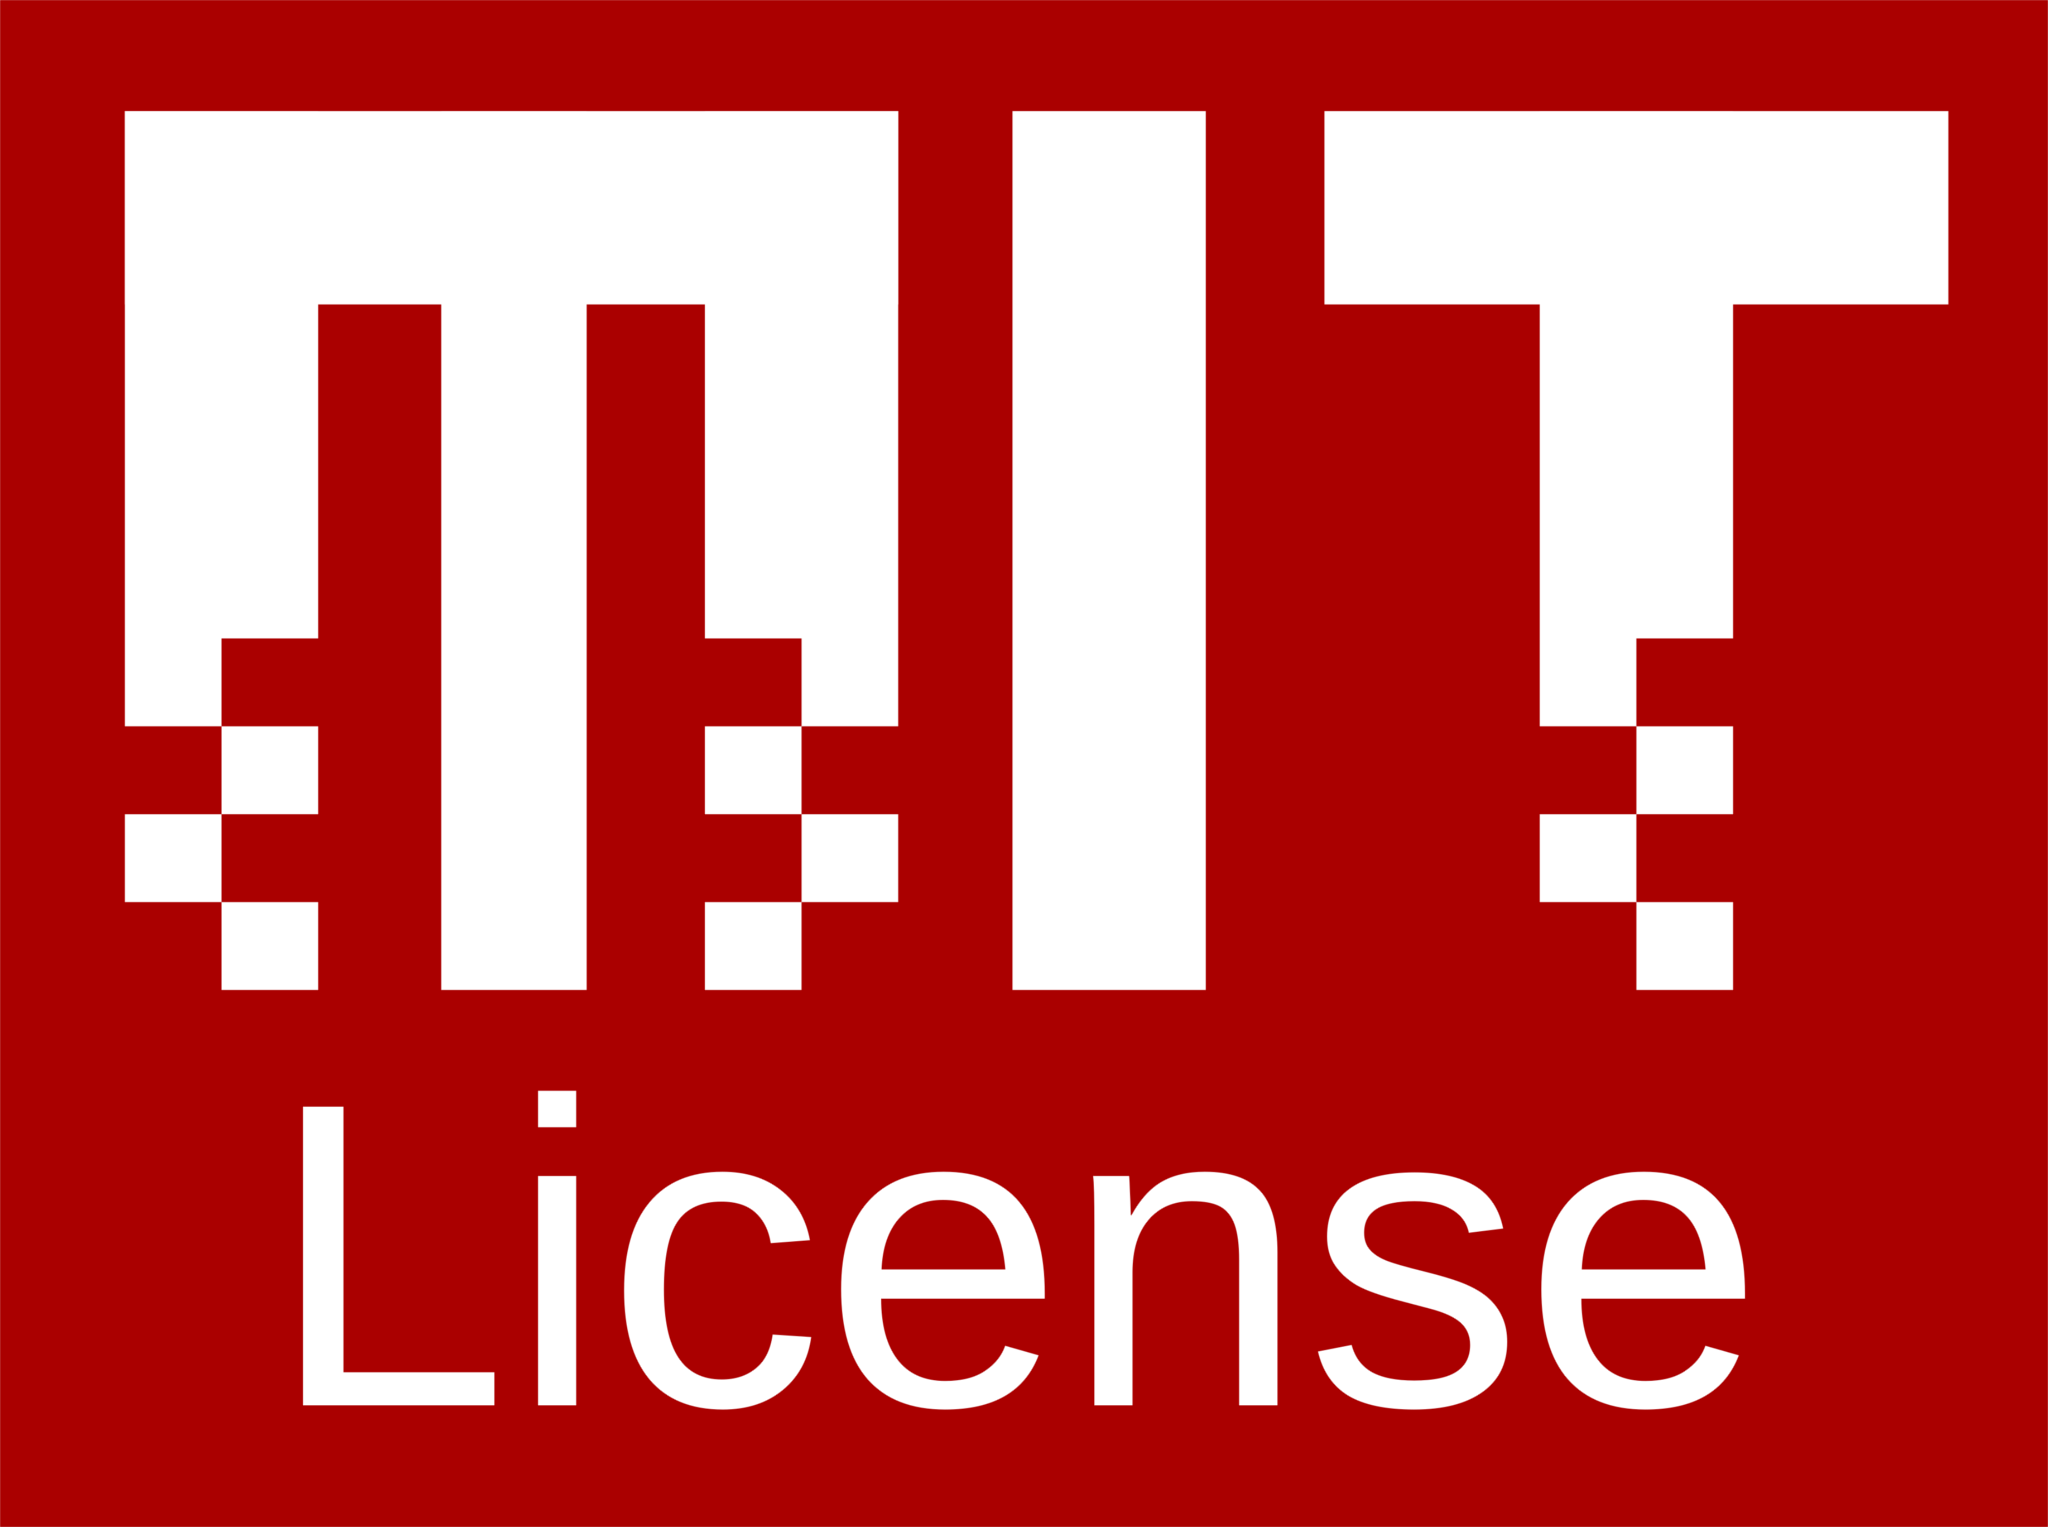 MIT License